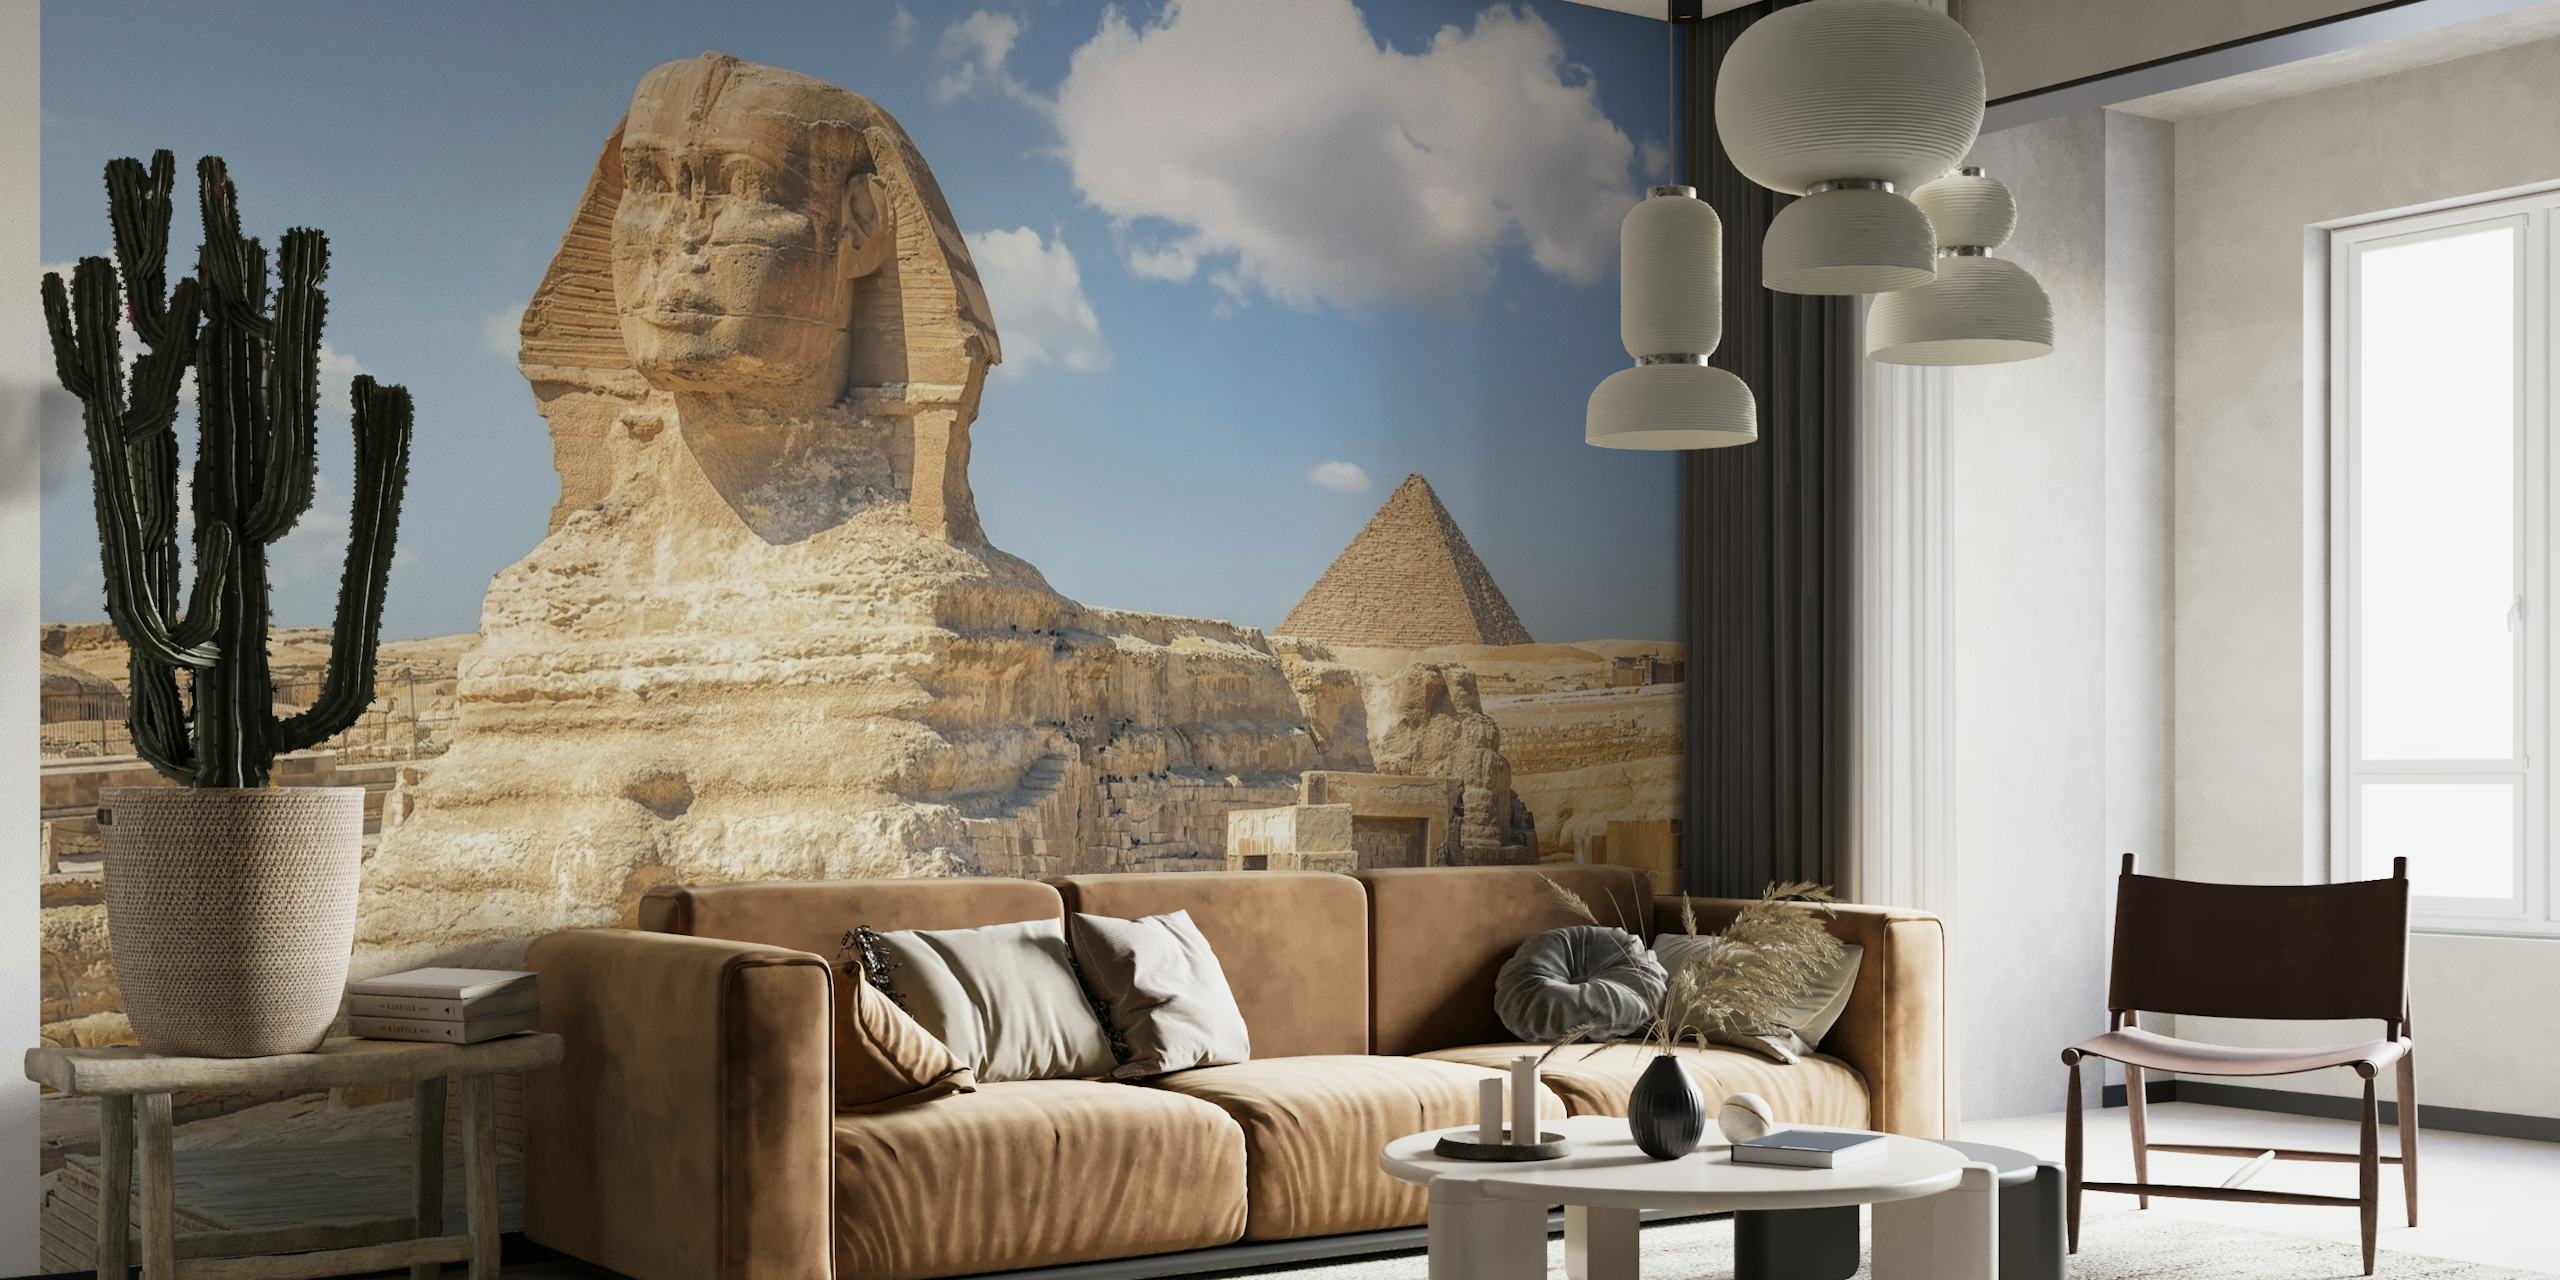 De muurschildering van de Sfinx en de Piramide op het Gizeh-plateau